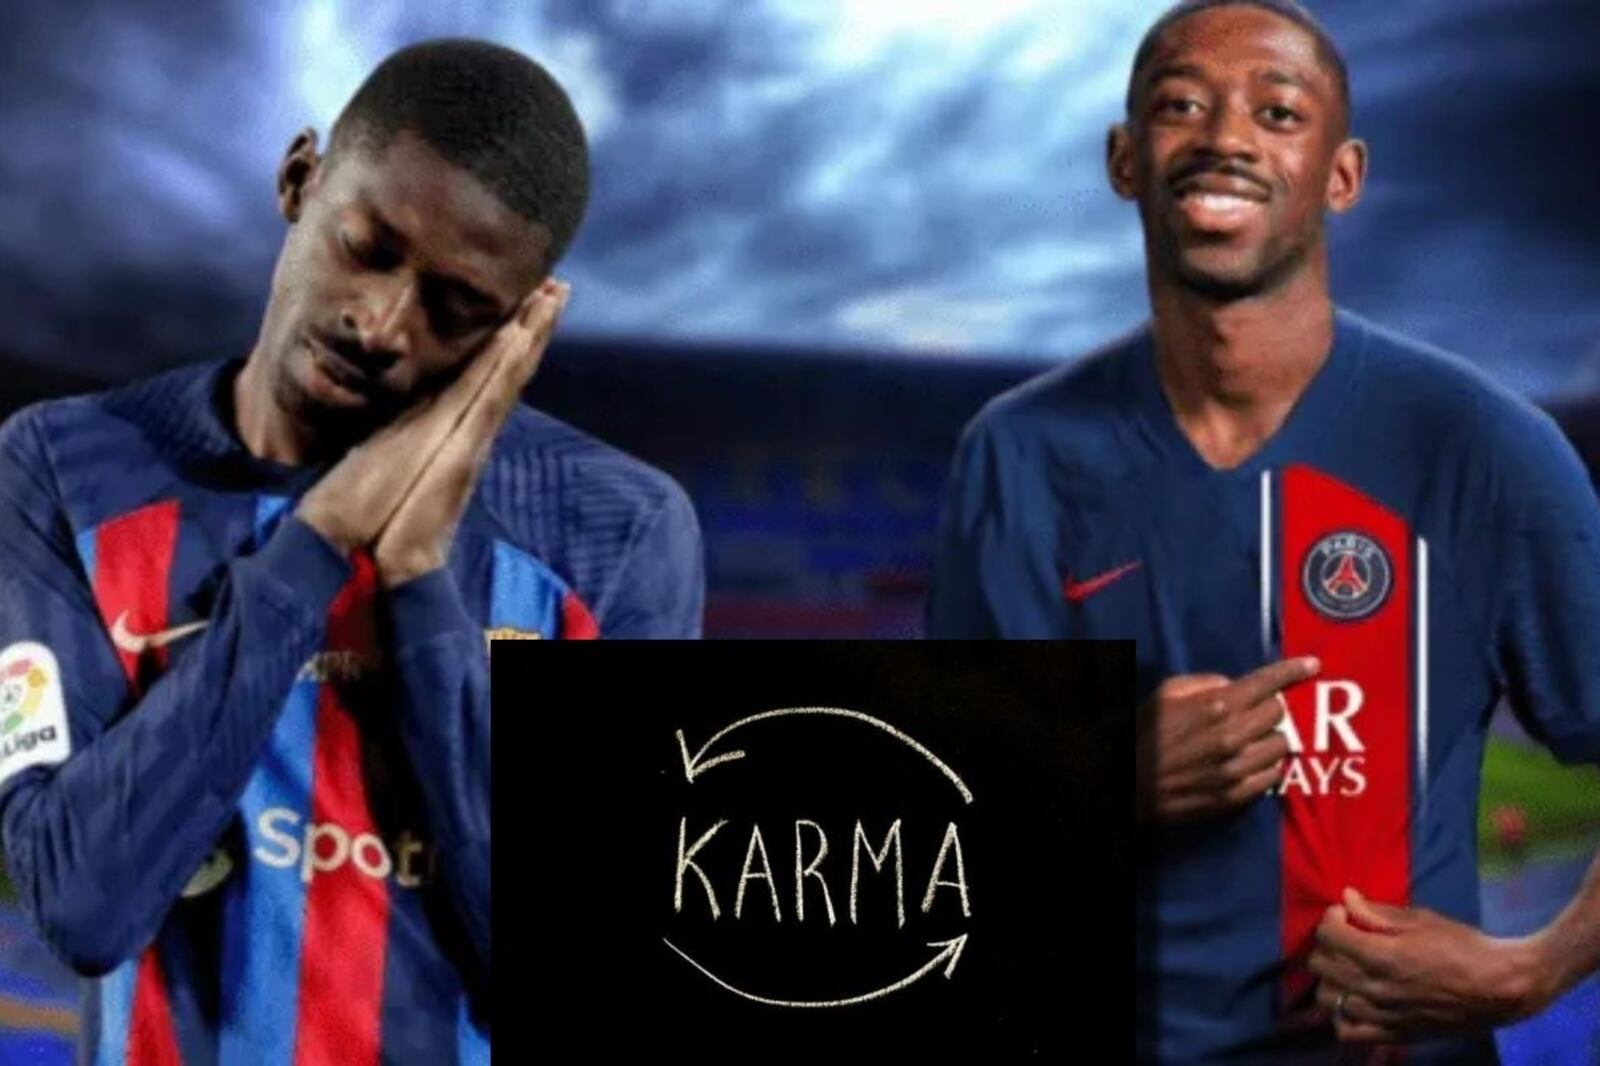 Juró amor al Barça pero prefirió el dinero, ahora el karma llegó a Dembelé en PSG